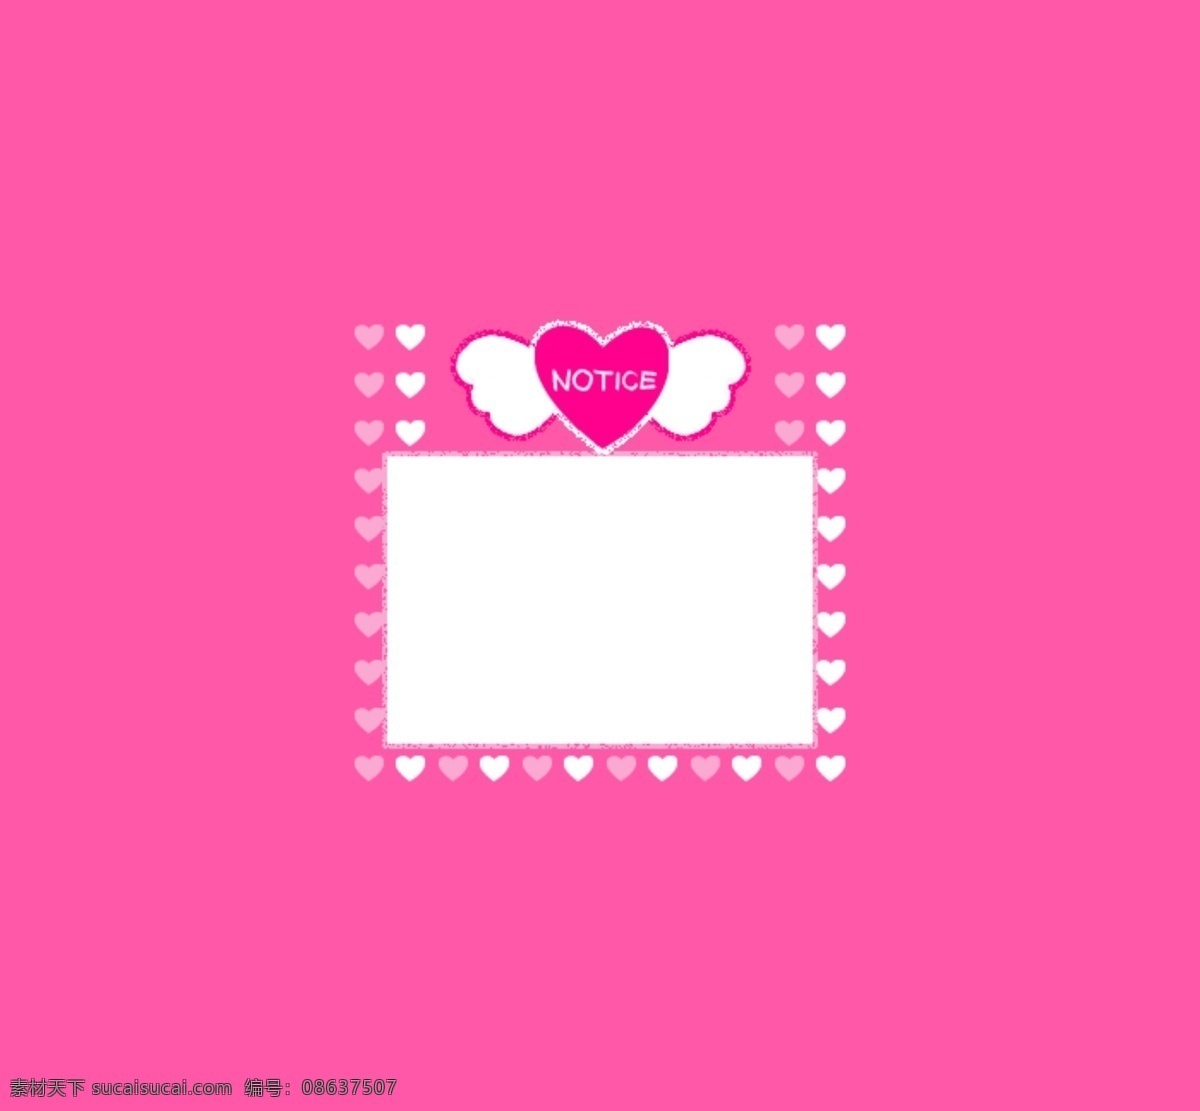 动态 粉红色 心形 网店 公告 素材图片 漂亮的设计 粉红色的背景 小 翅膀 心 淘宝素材 其他淘宝素材